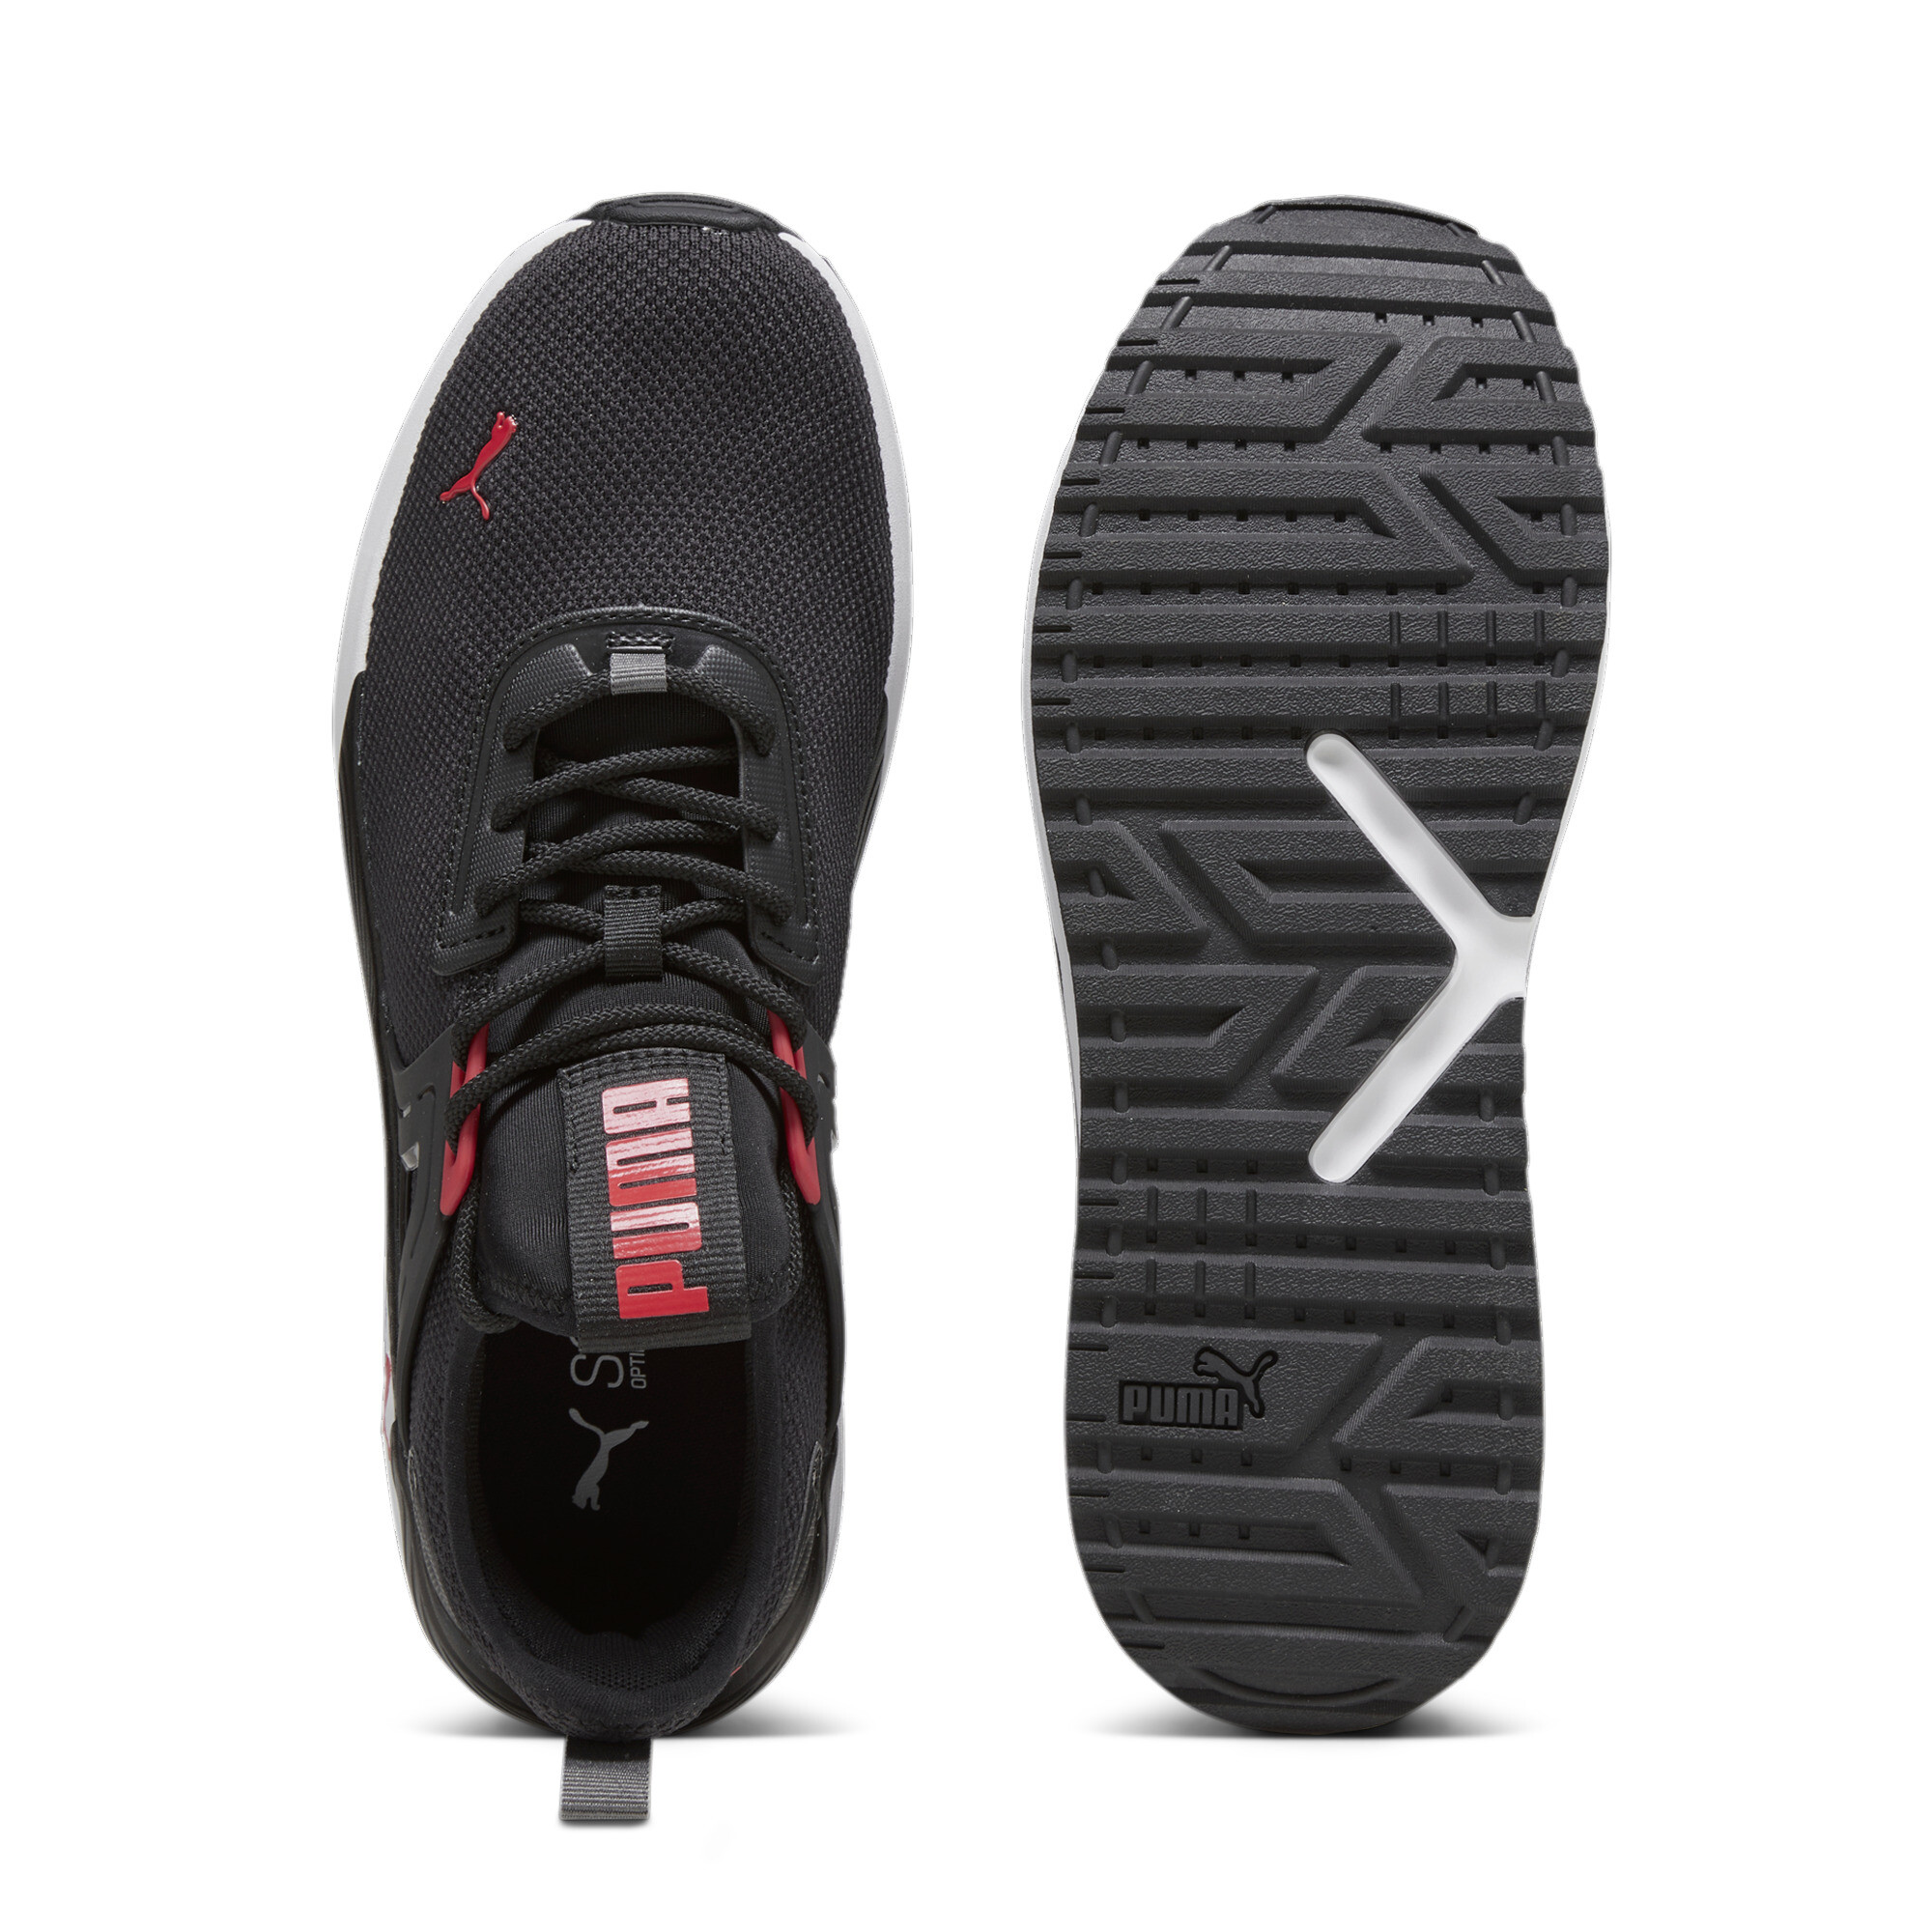 Men's PUMA Pacer 23 Sneakers In 10 - Black, Size EU 40.5